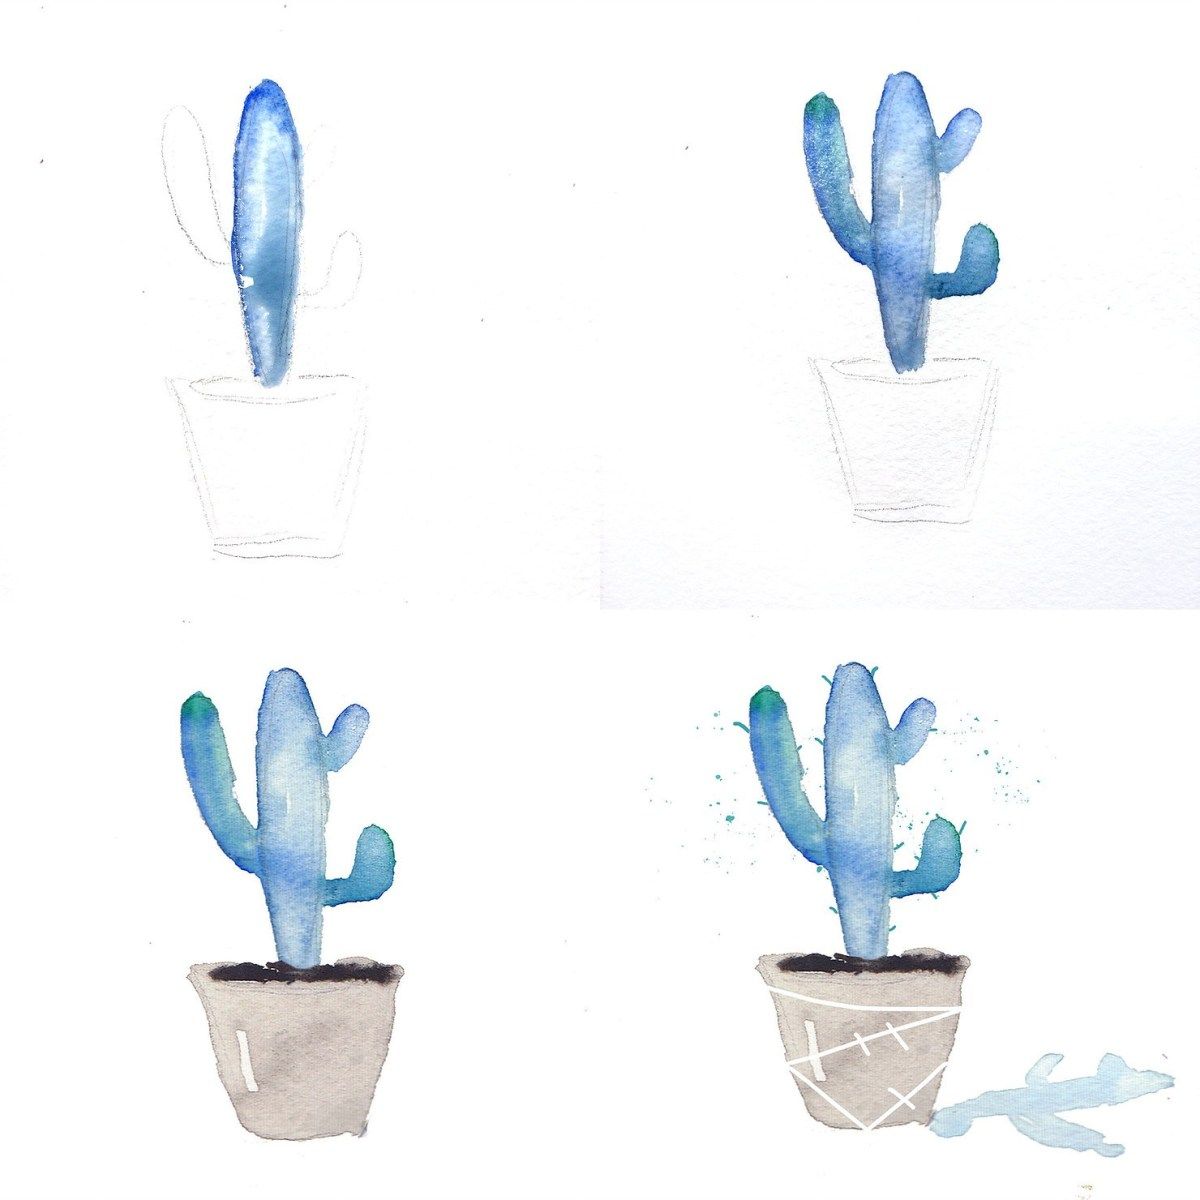 Idén till en blå kaktus gjord av vattenfärger i enkla steg